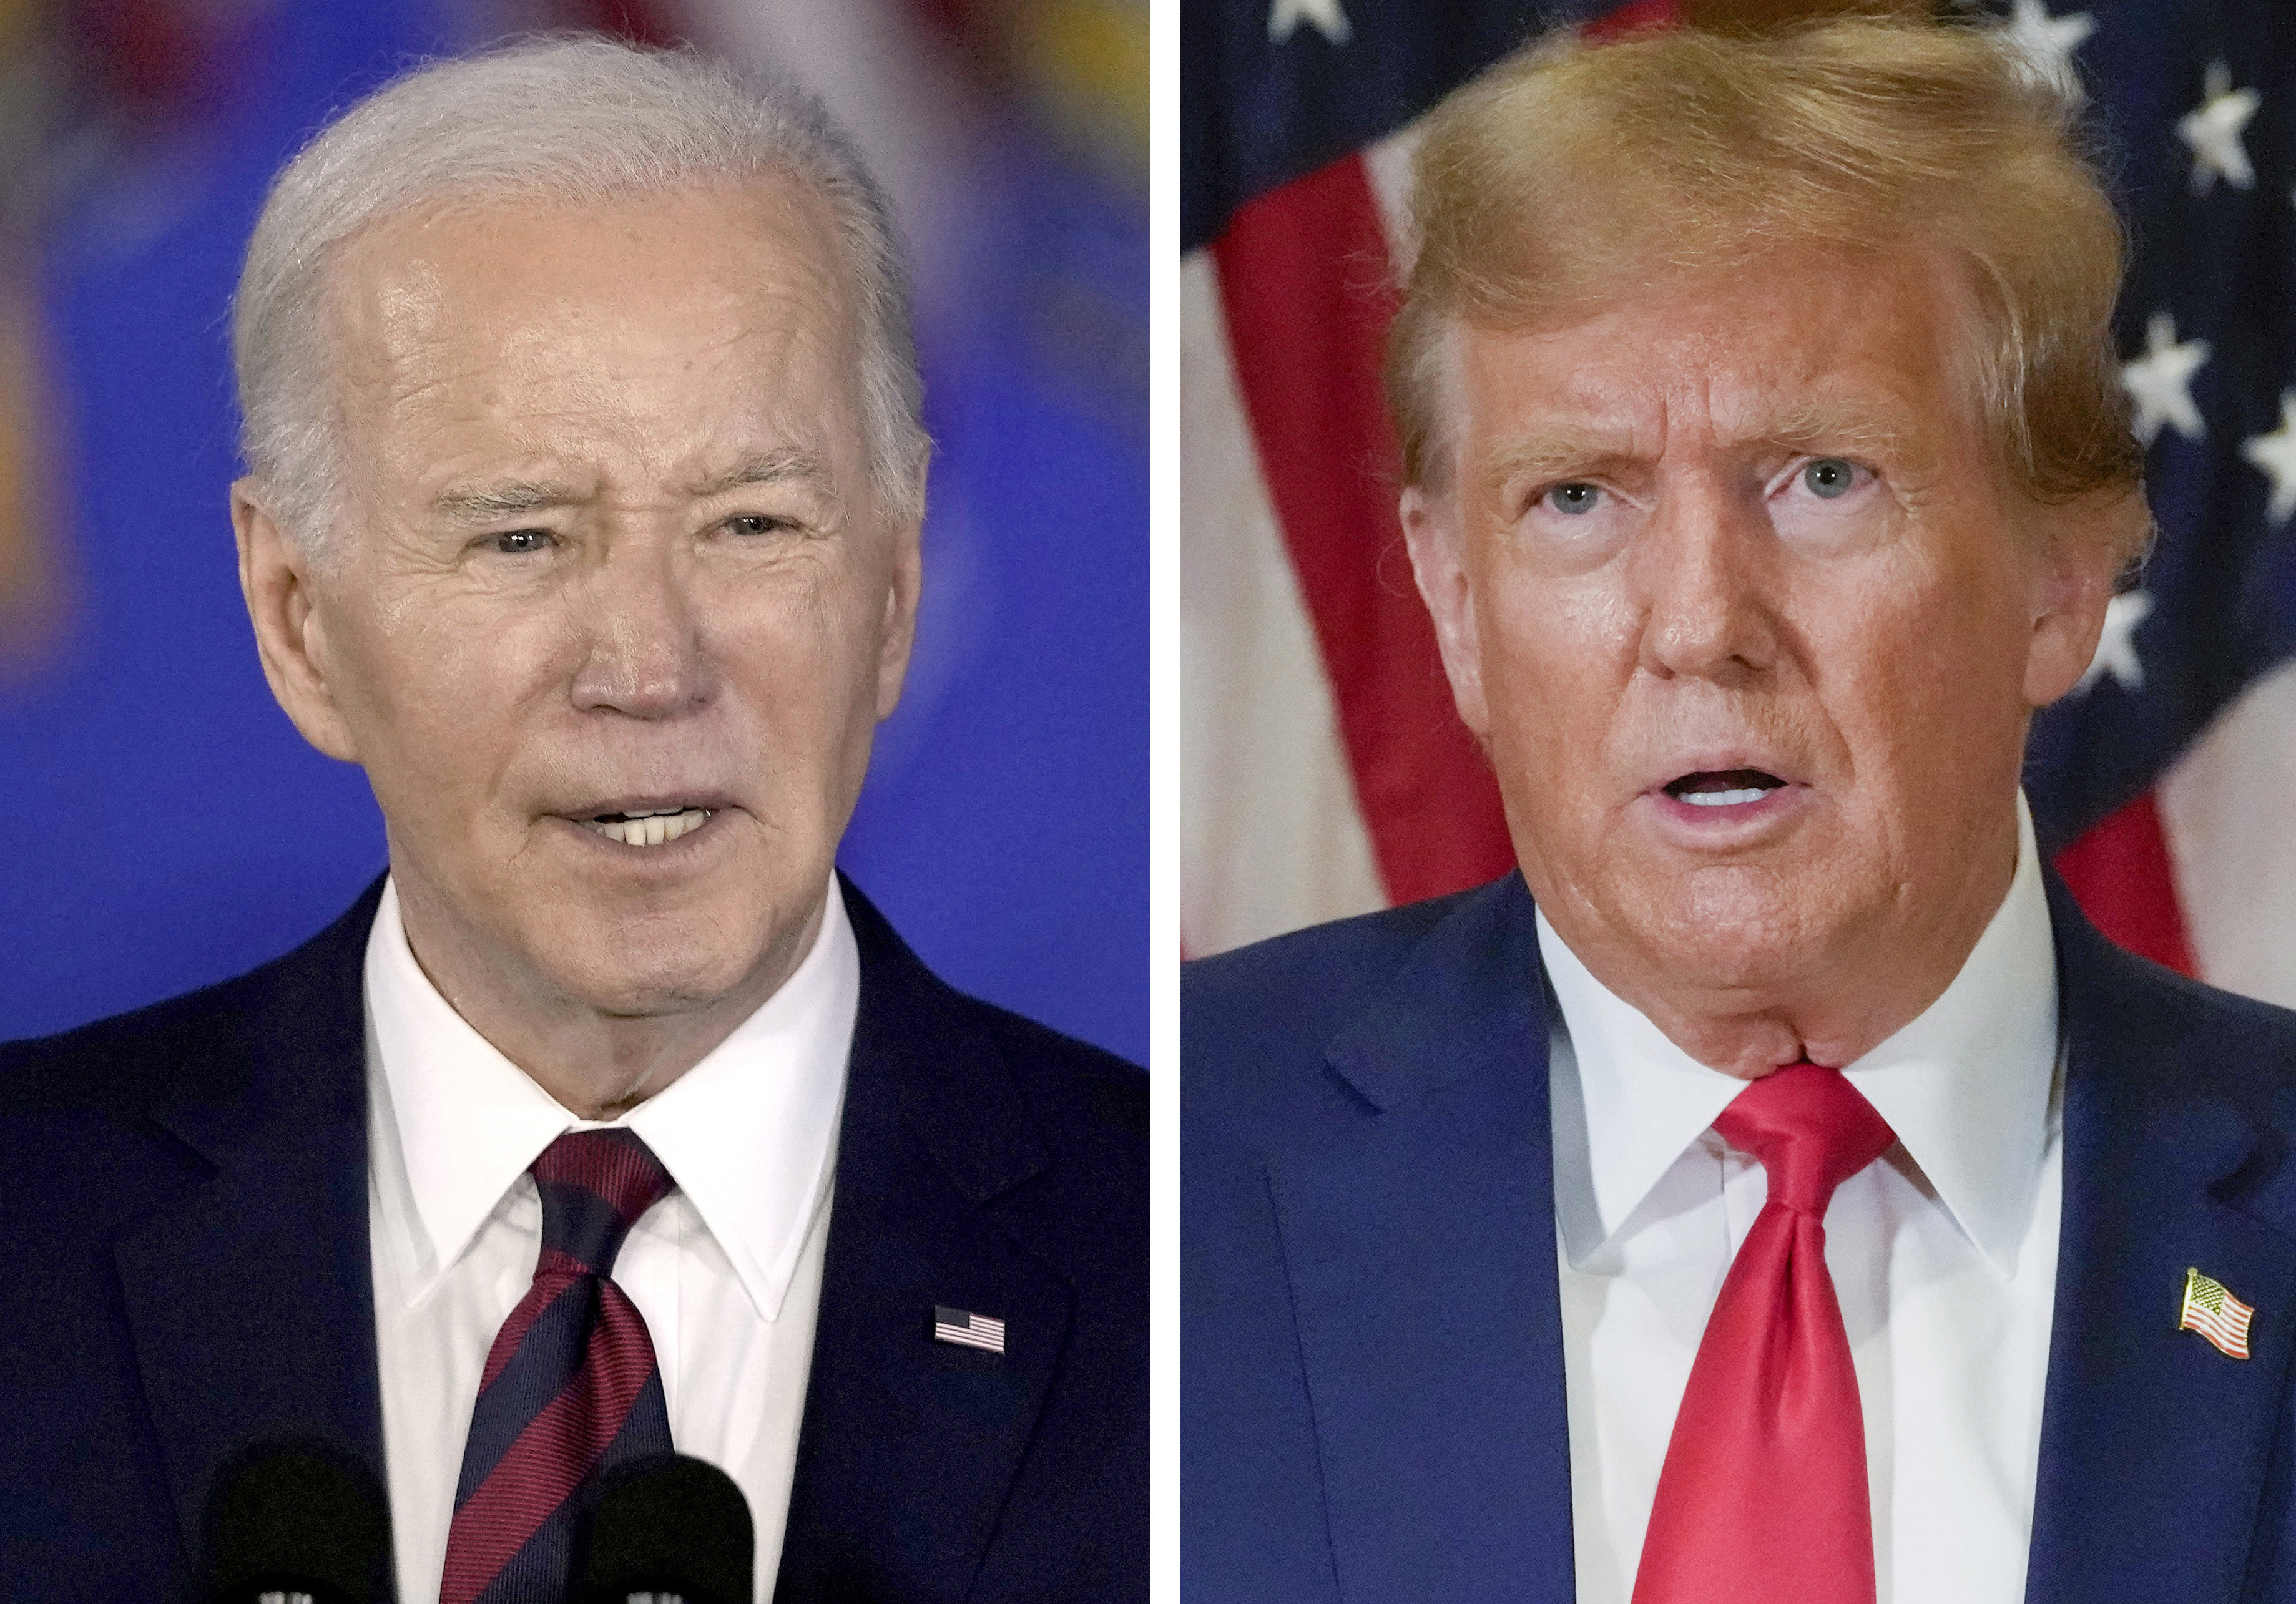 Biden and Trump win Rhode Island, Connecticut, New York and Wisconsin
primaries